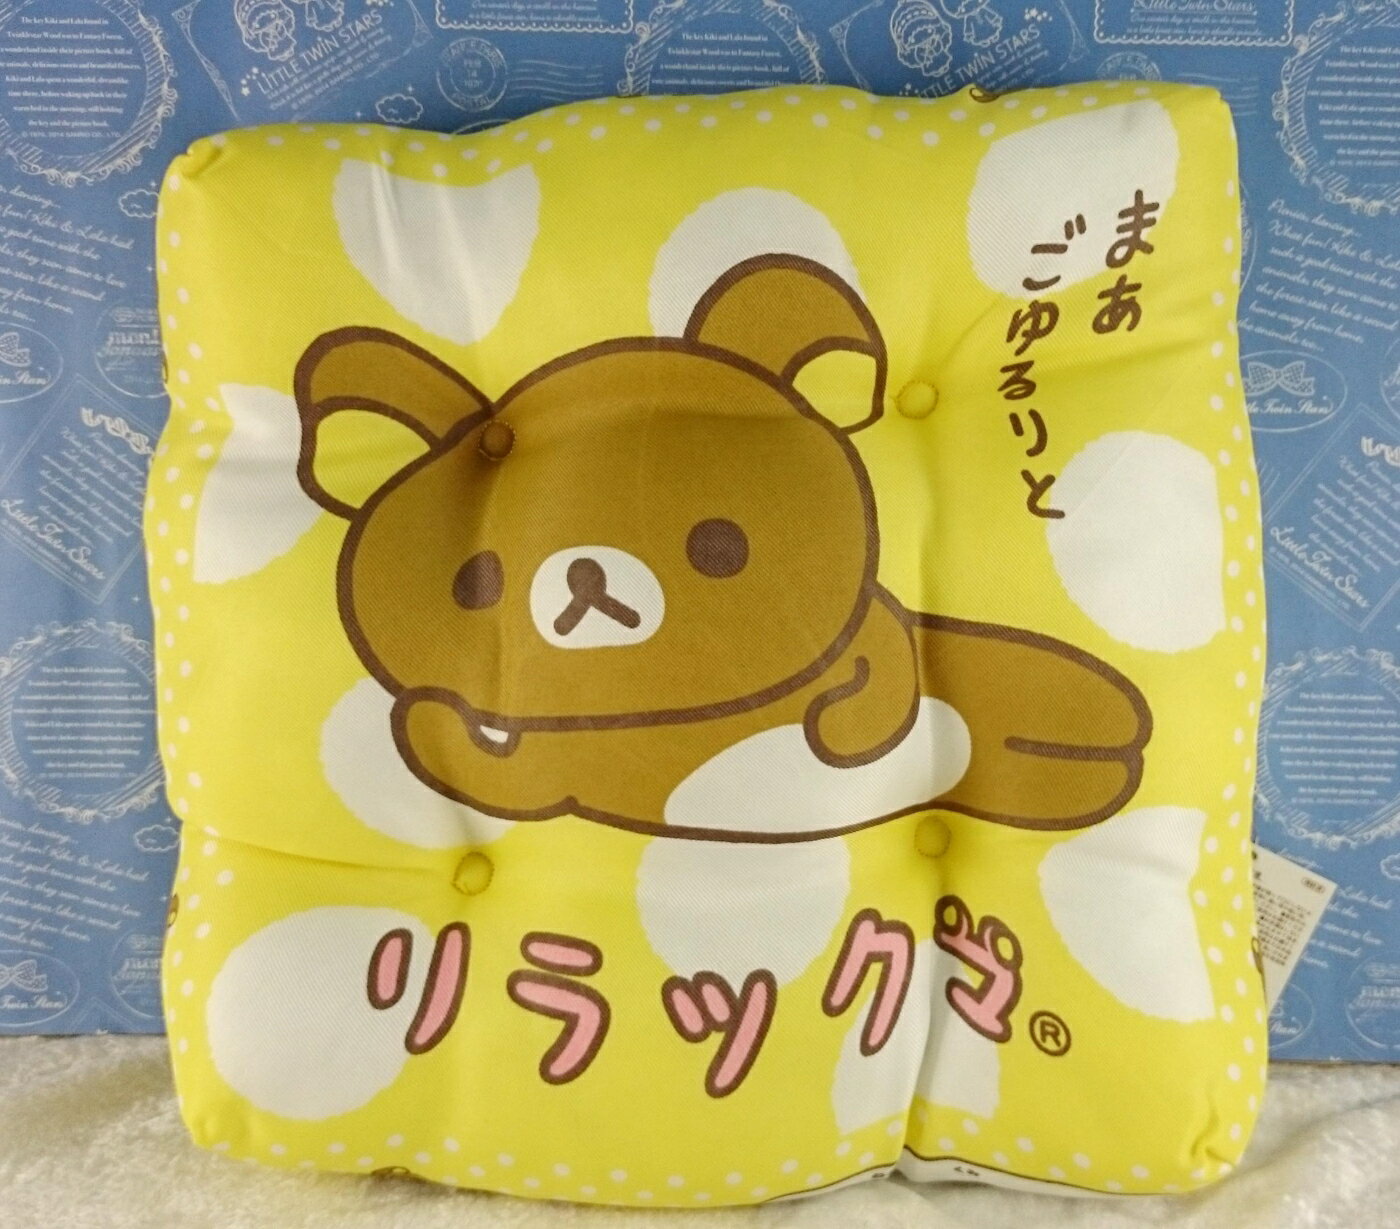 【震撼精品百貨】Rilakkuma San-X 拉拉熊懶懶熊 抱枕 黃點點坐墊 震撼日式精品百貨